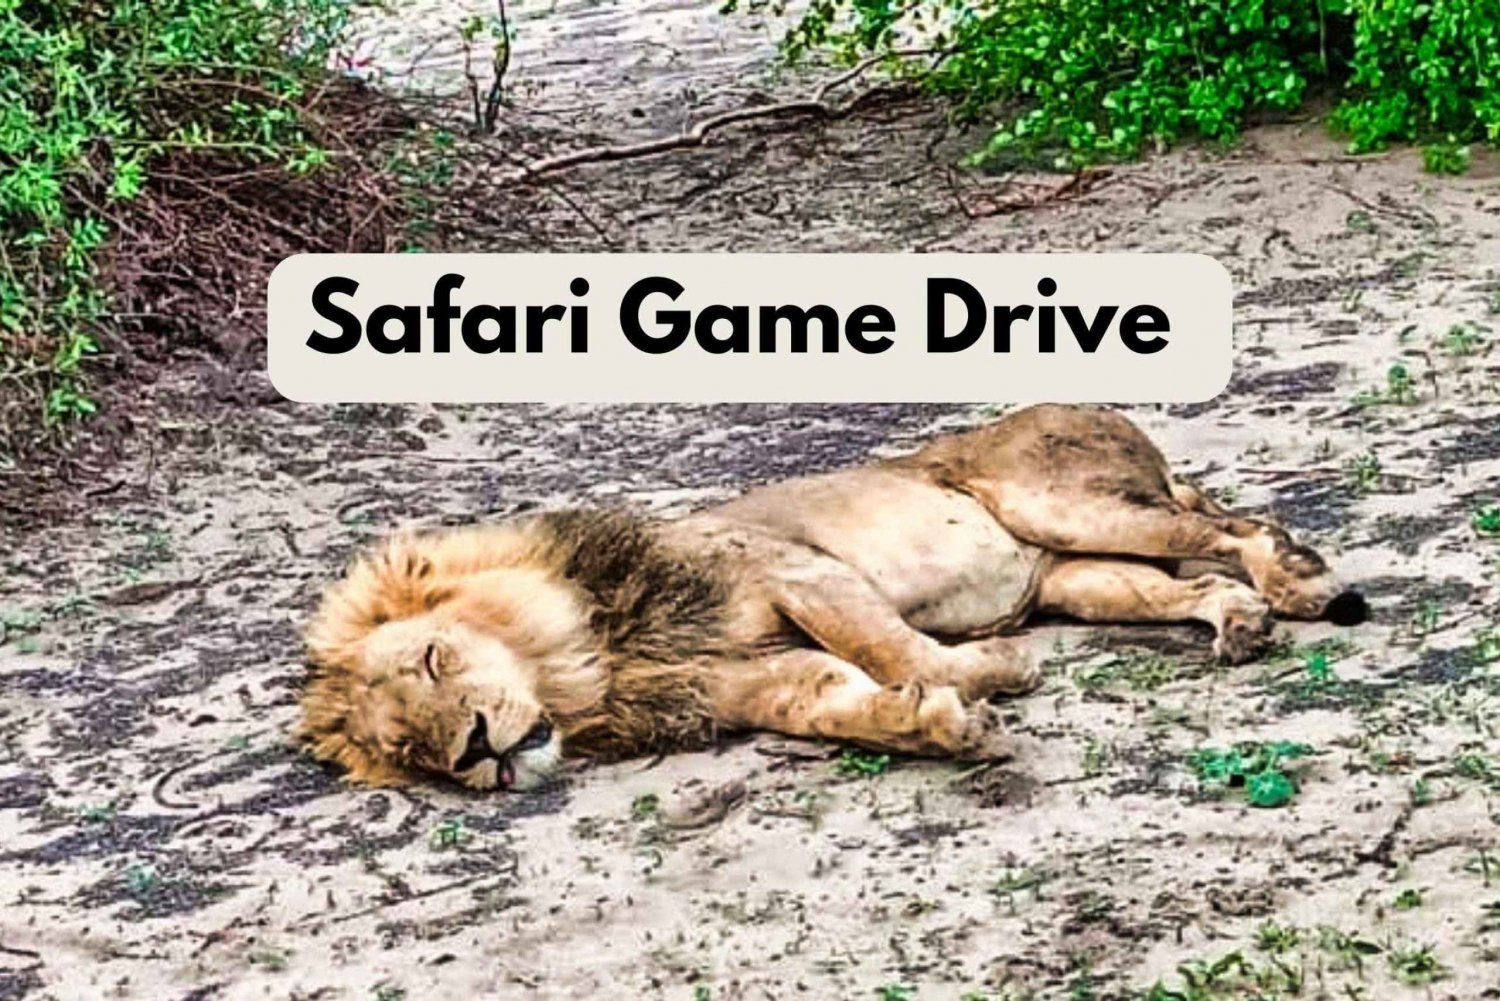 Victoria Falls: Safari med vildtlevende dyr